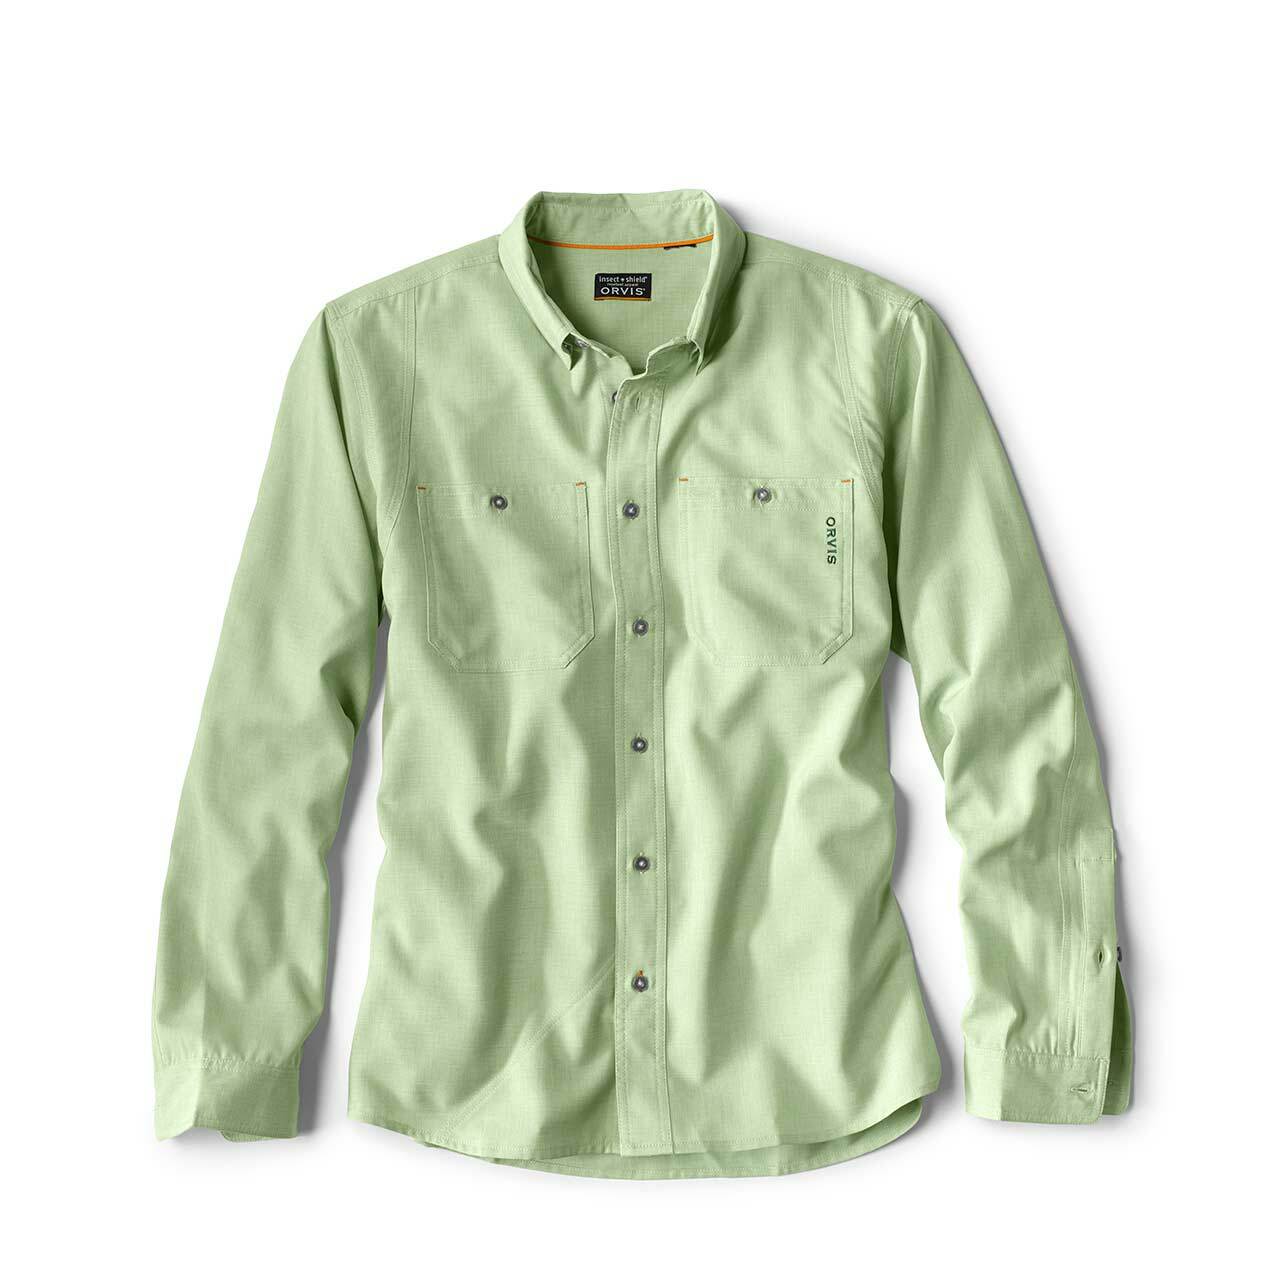 Orvis Men's UPF 30+ Quick Dry Short Sleeve Button Tech Shirt, H21